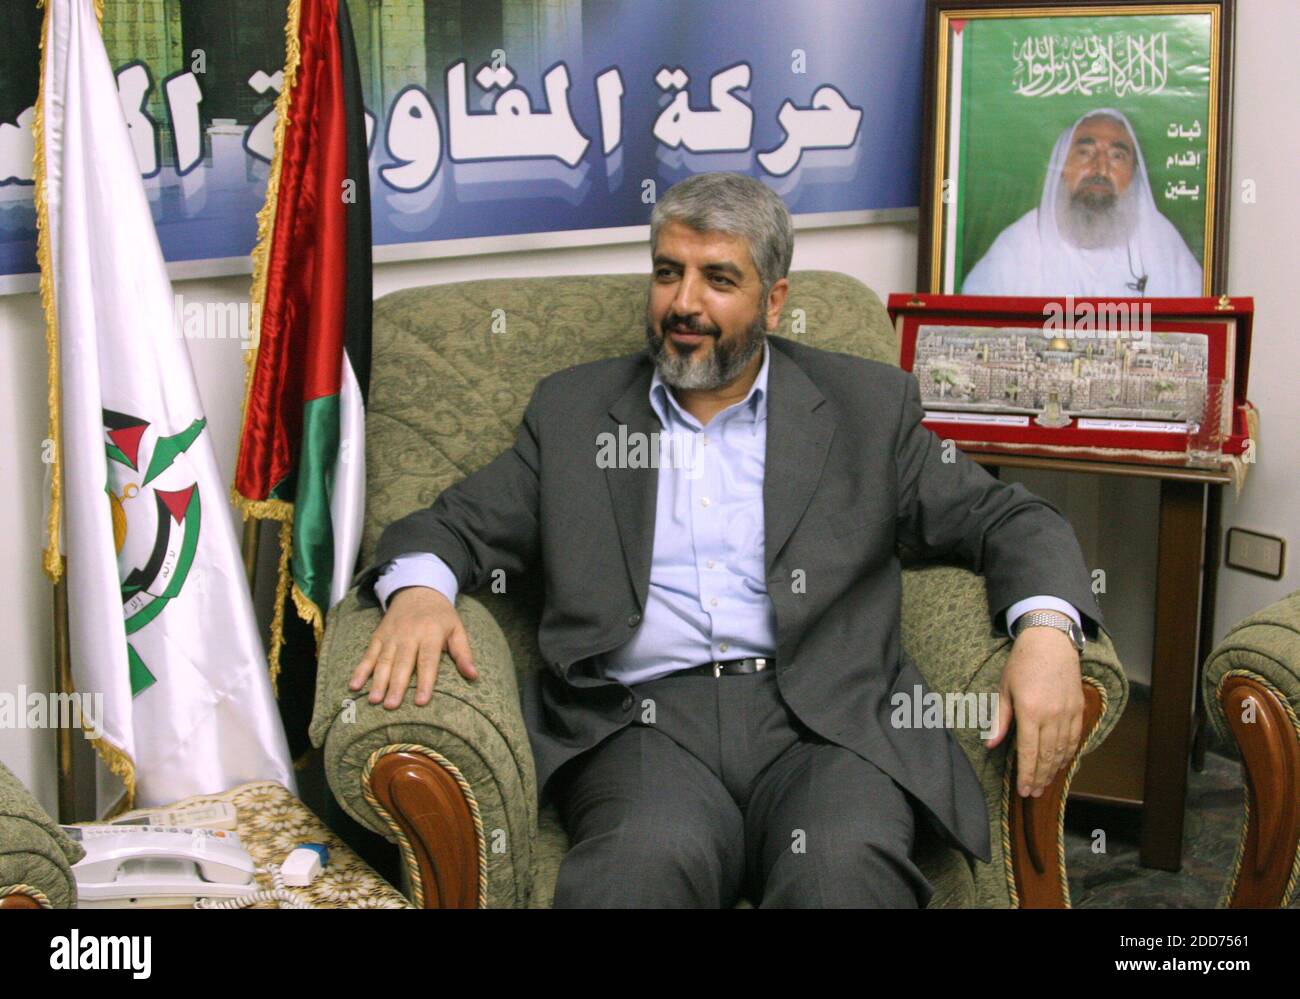 KEIN FILM, KEIN VIDEO, KEIN Fernsehen, KEINE DOKUMENTATION - Khaled Mashaal, der politische Führer der Hamas im Exil, spricht während eines Exklusivinterviews in seinem Büro in Damaskus, Syrien, am 21. August 2007 zu einem Reporter. Mashaal sagte, dass die Hamas den vorgezogenen Wahlen in Gaza niemals zustimmen werde, dass Yasser Arafat und Mahmoud Abbas das palästinensische Volk in eine Sackgasse geführt hätten und dass ein dritter Palestrina-Aufstand anlaufen könnte. Foto von Dion Nissenbaum/MCT/ABACAPRESS.COM Stockfoto